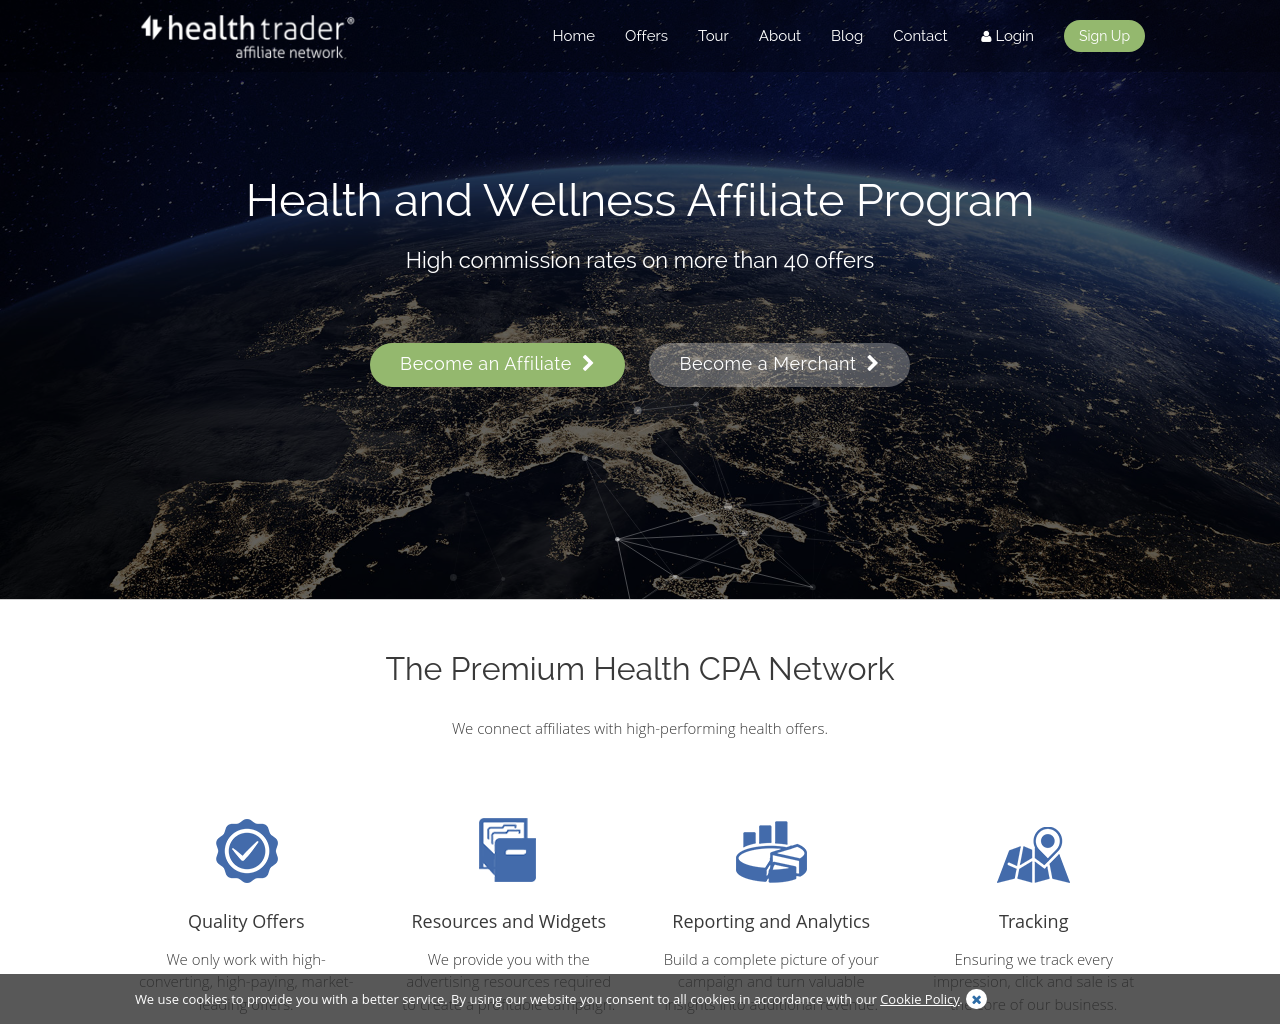 healthtrader.com